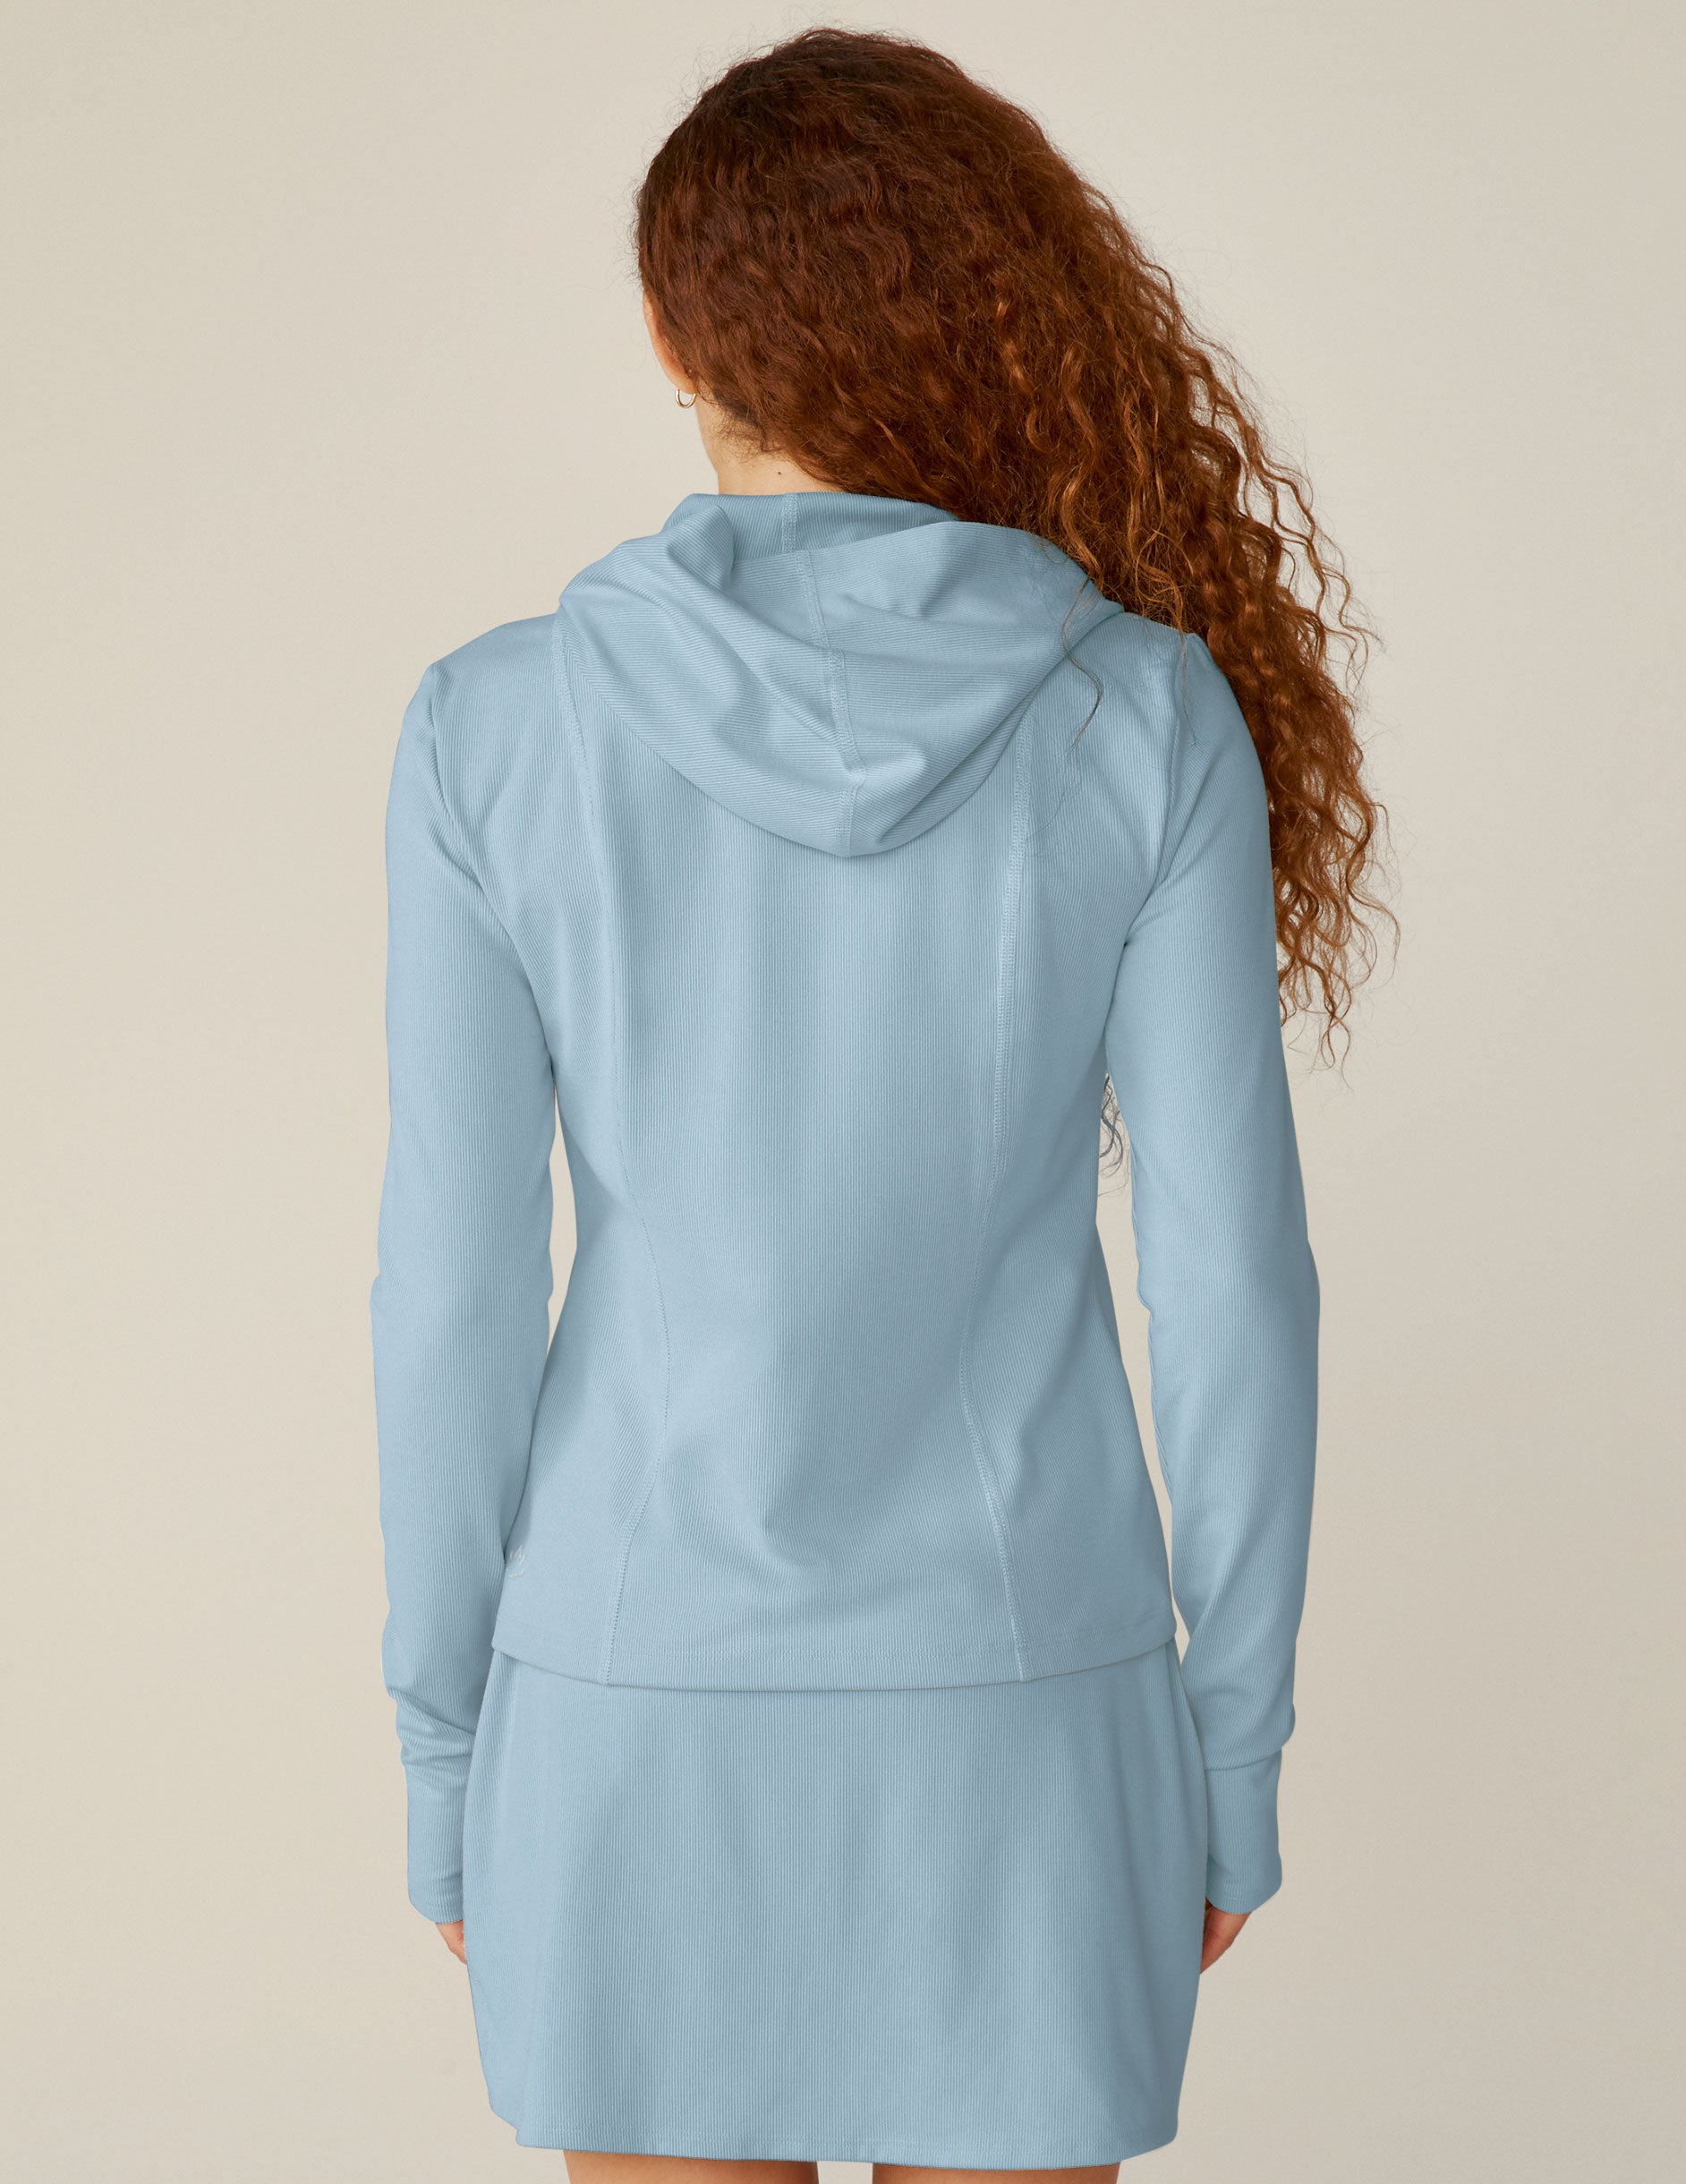 blue heather rib zip-up hoodie. 